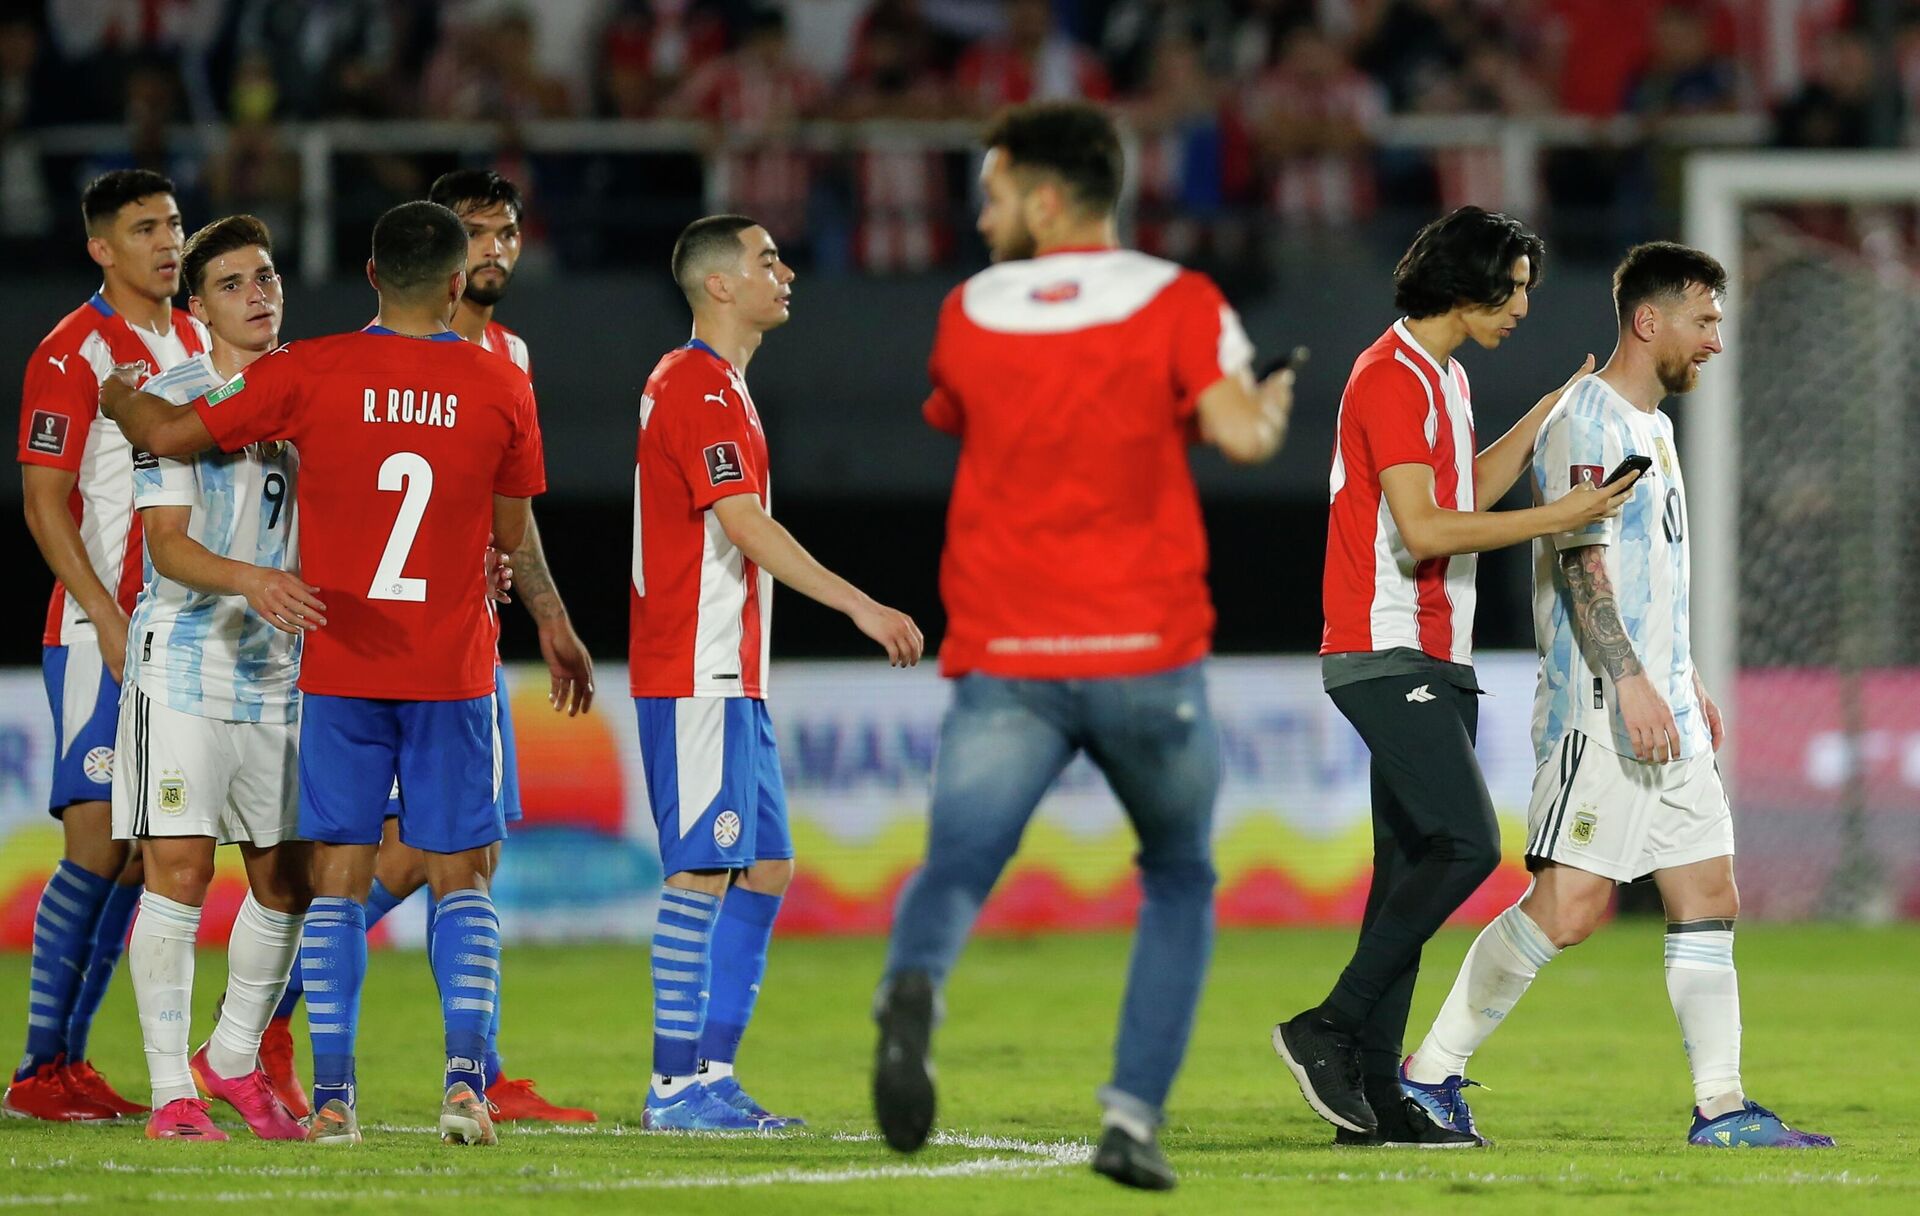 Un fanático persigue a Lionel Messi para tomarse una fotografía tras un partido en Asunción - Sputnik Mundo, 1920, 08.10.2021